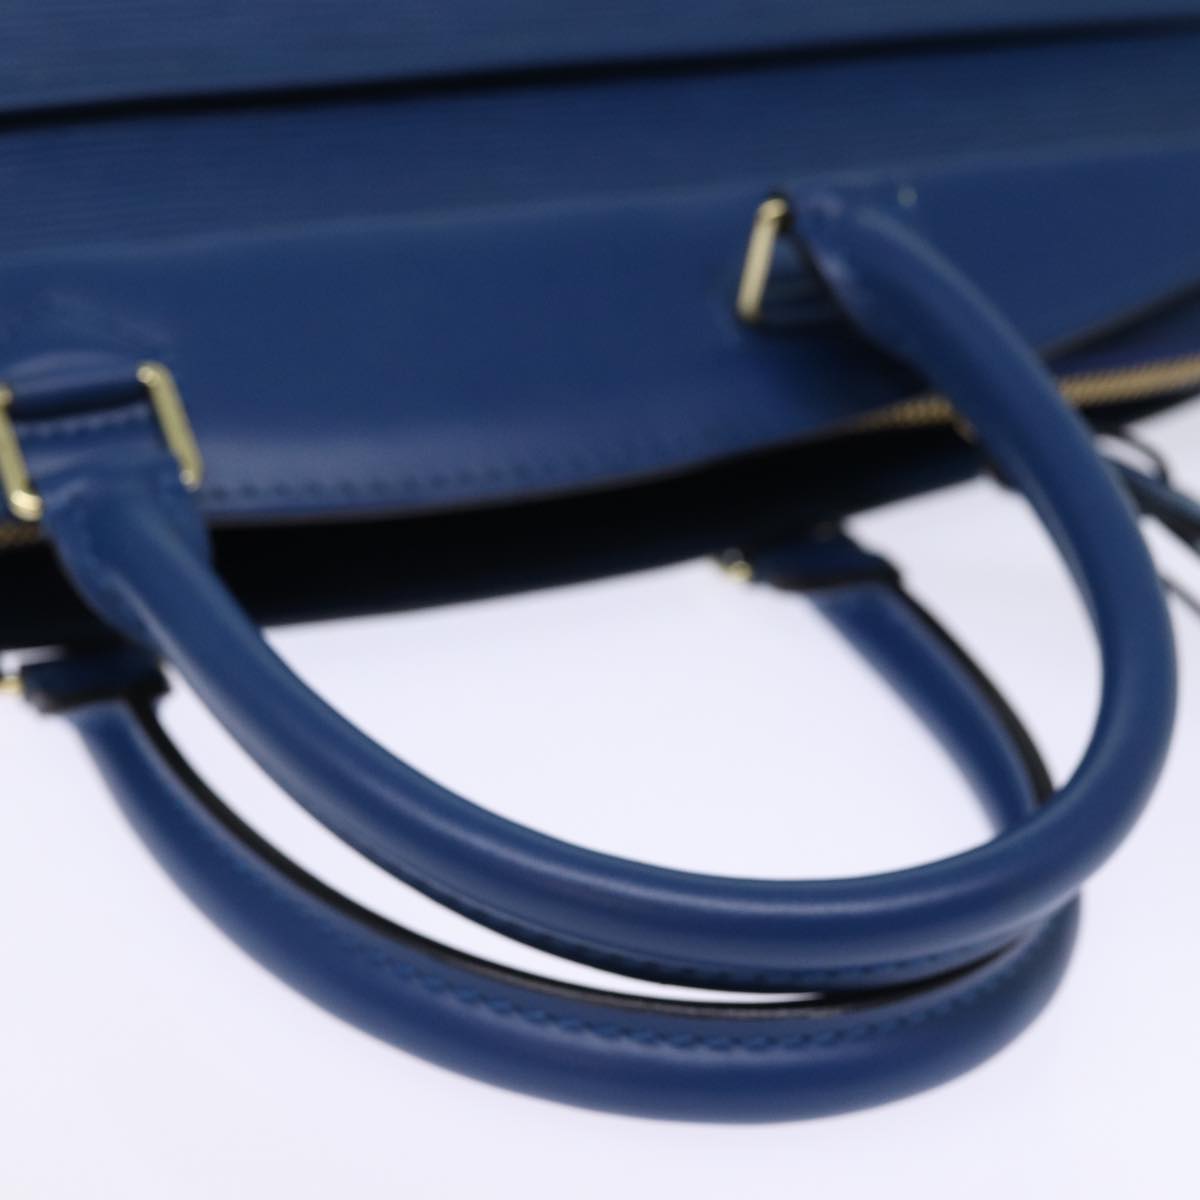 LOUIS VUITTON Epi Riviera Hand Bag Blue M48185 LV Auth 74519